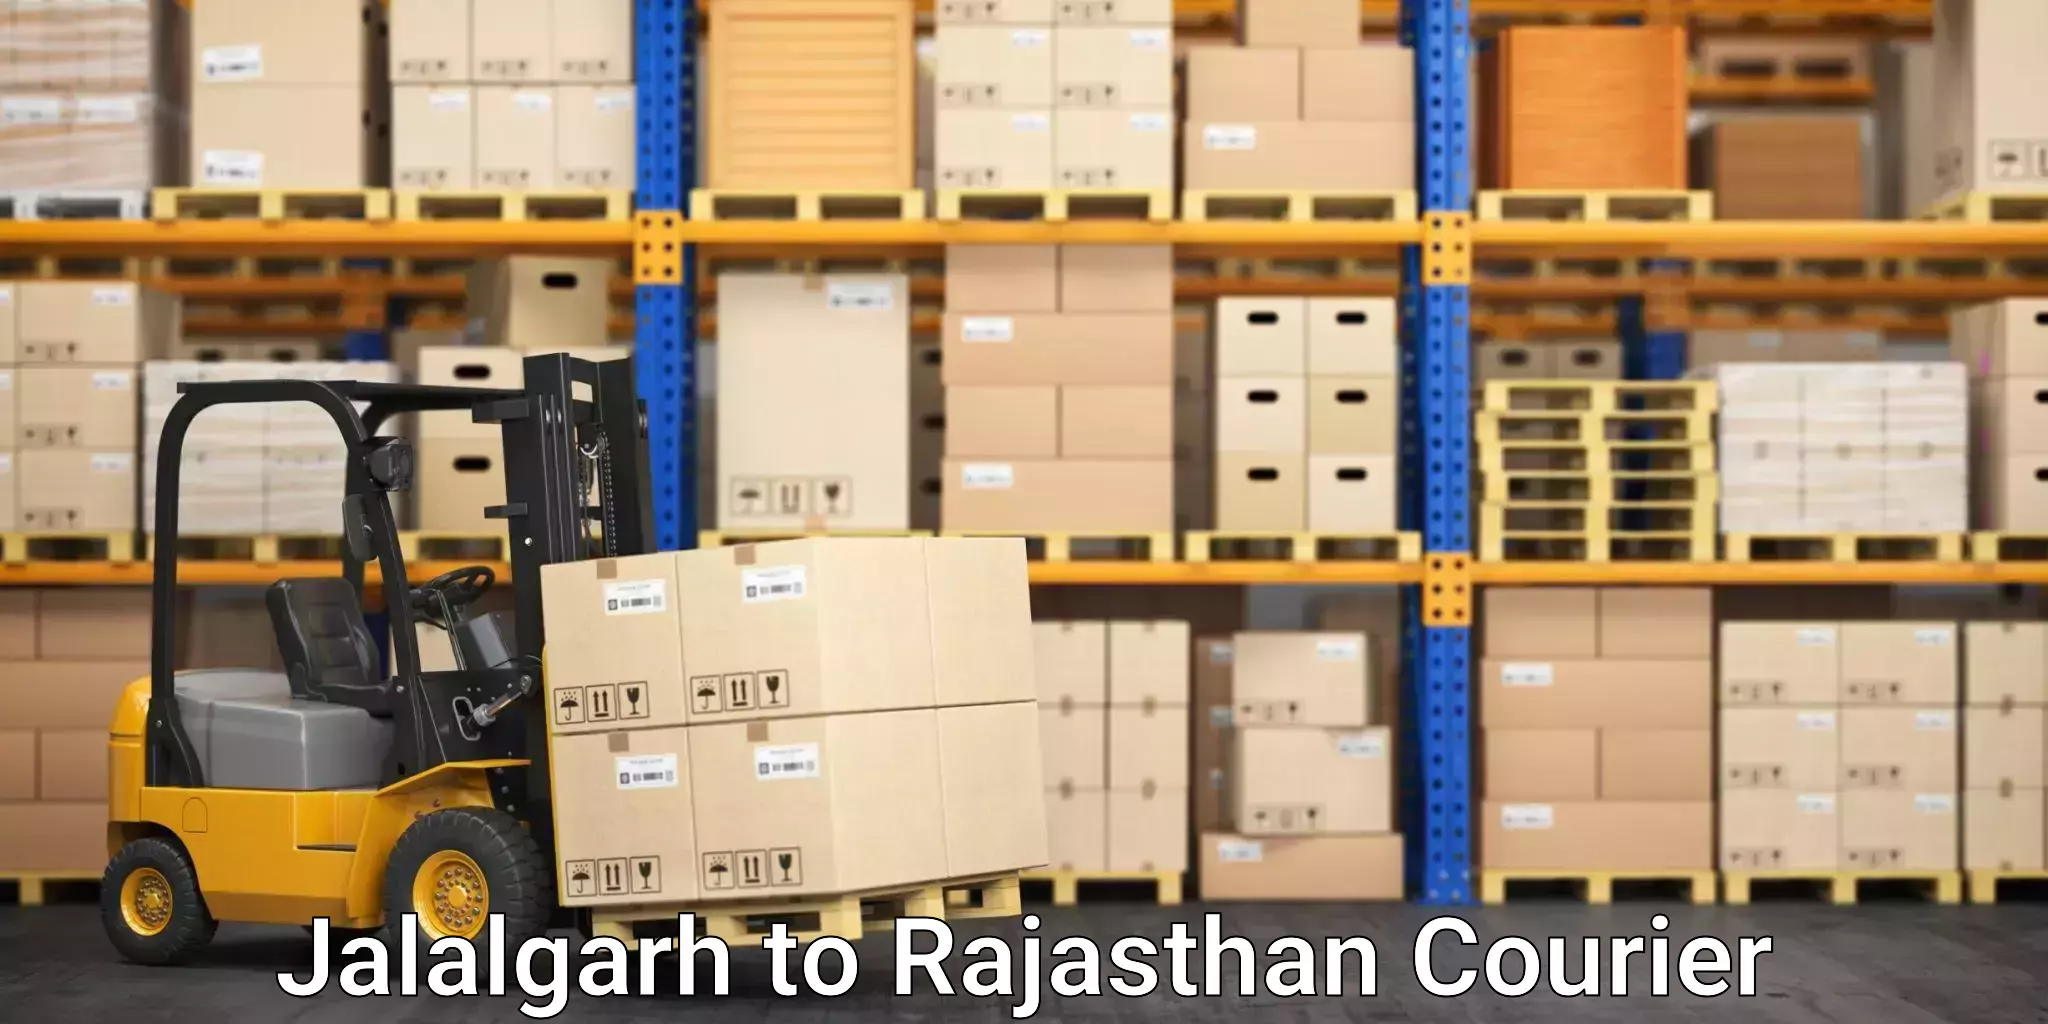 Furniture moving experts Jalalgarh to Rajasthan